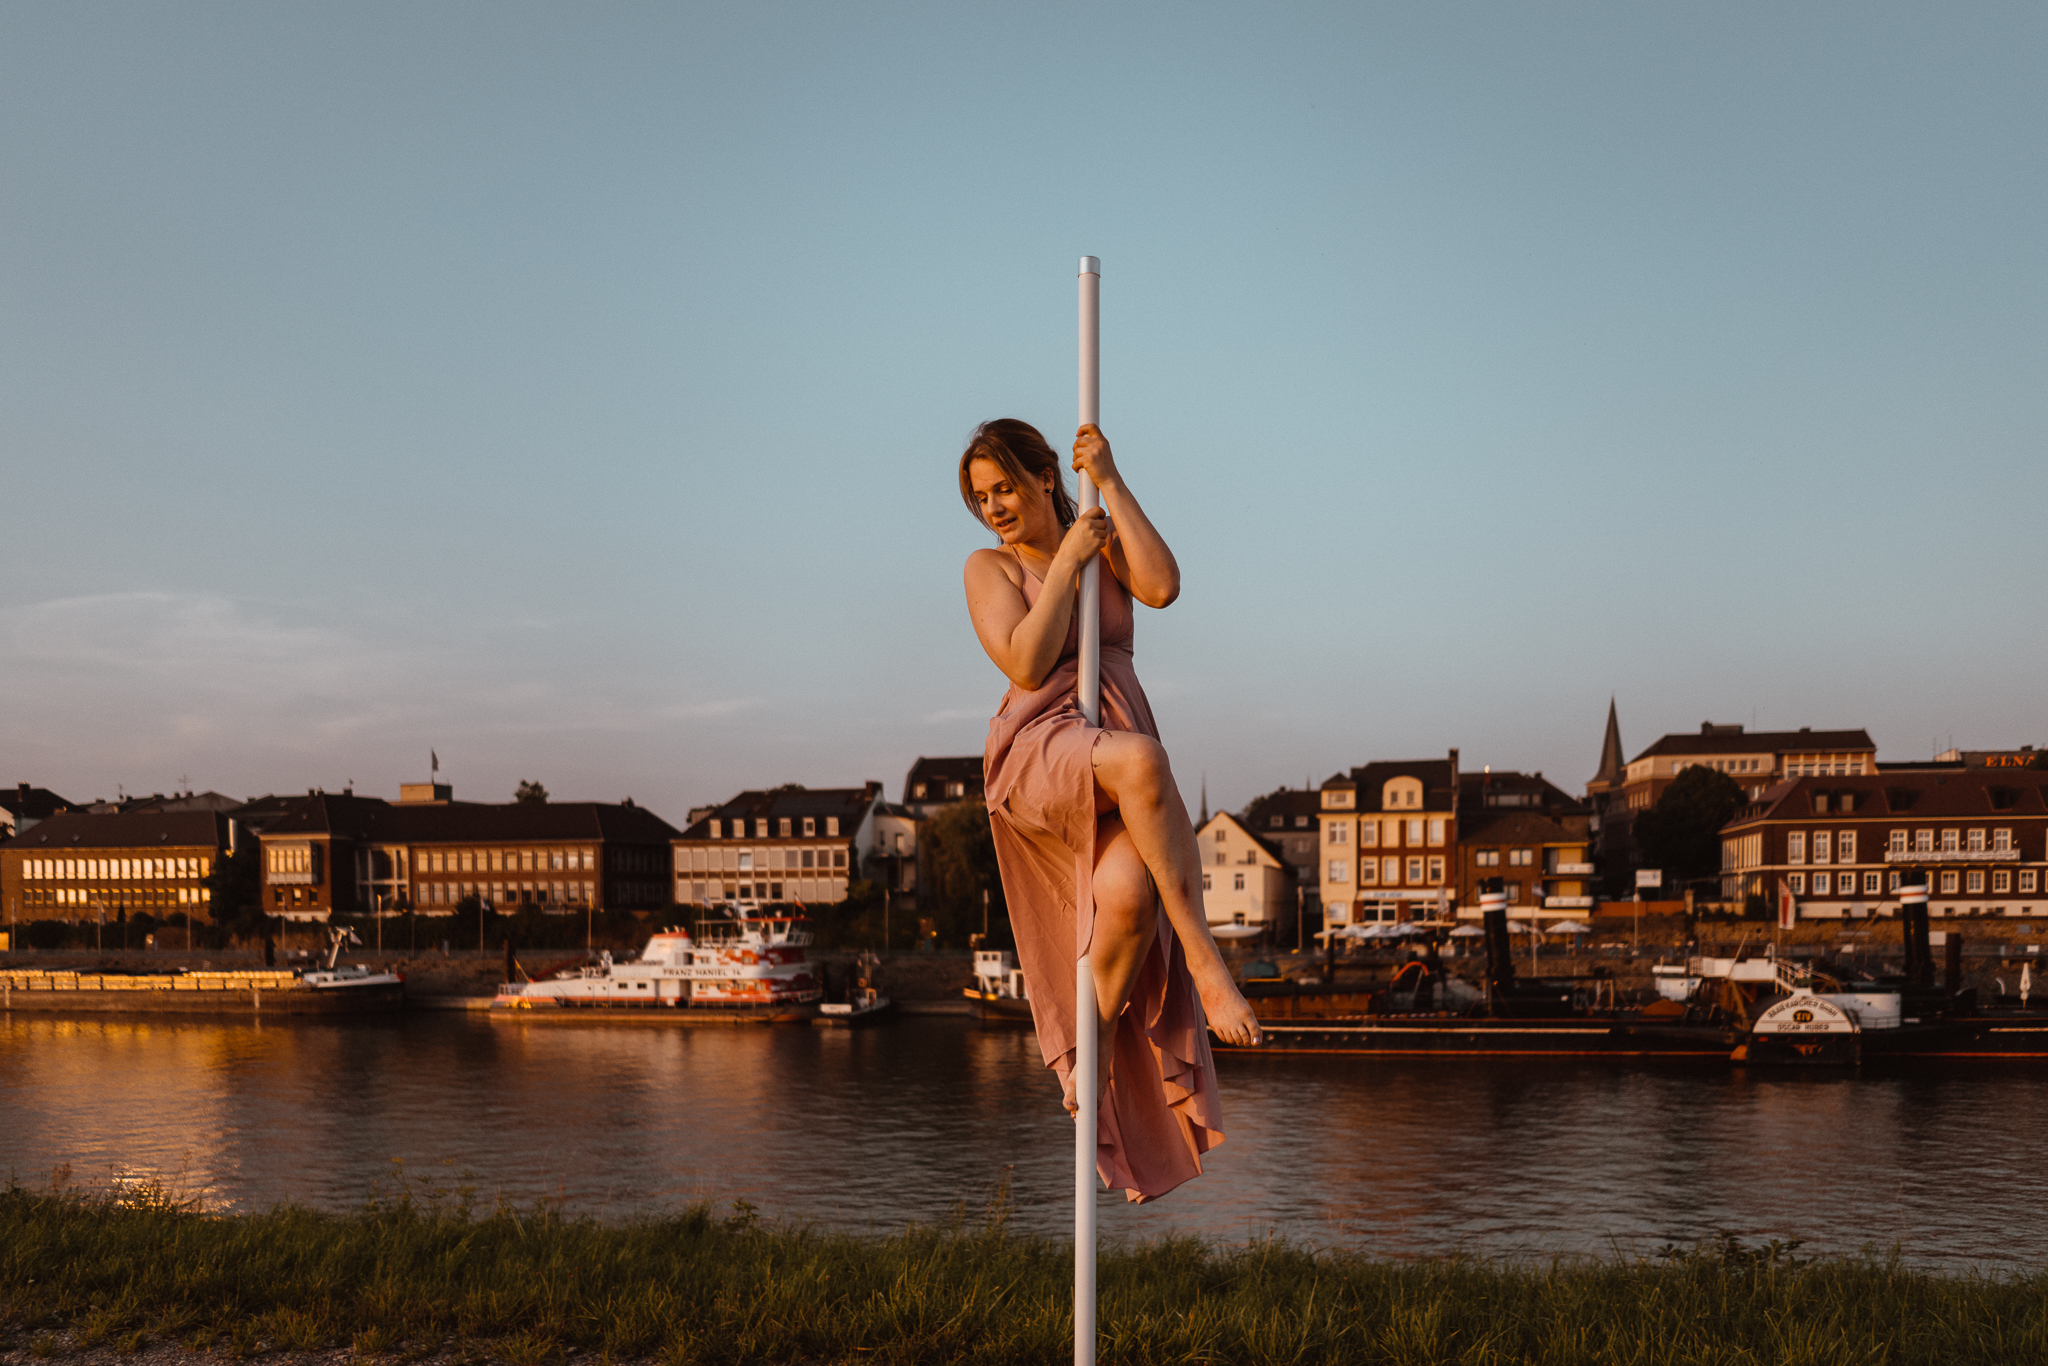 Pole Dance Hafen Container Vanessa #mfoerster